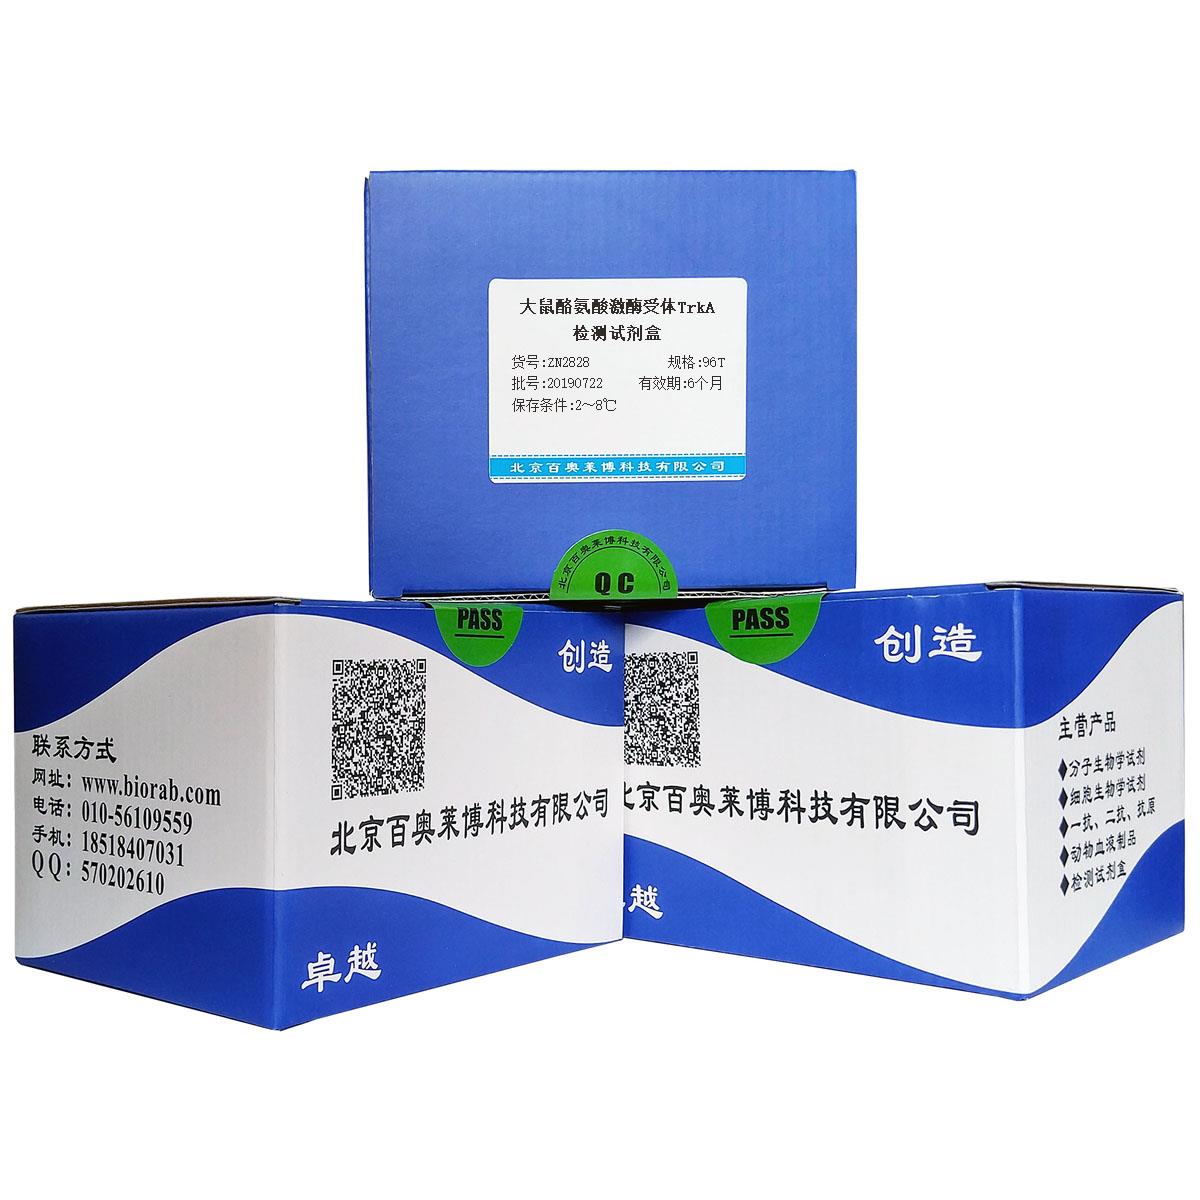 大鼠酪氨酸激酶受体TrkA检测试剂盒北京品牌